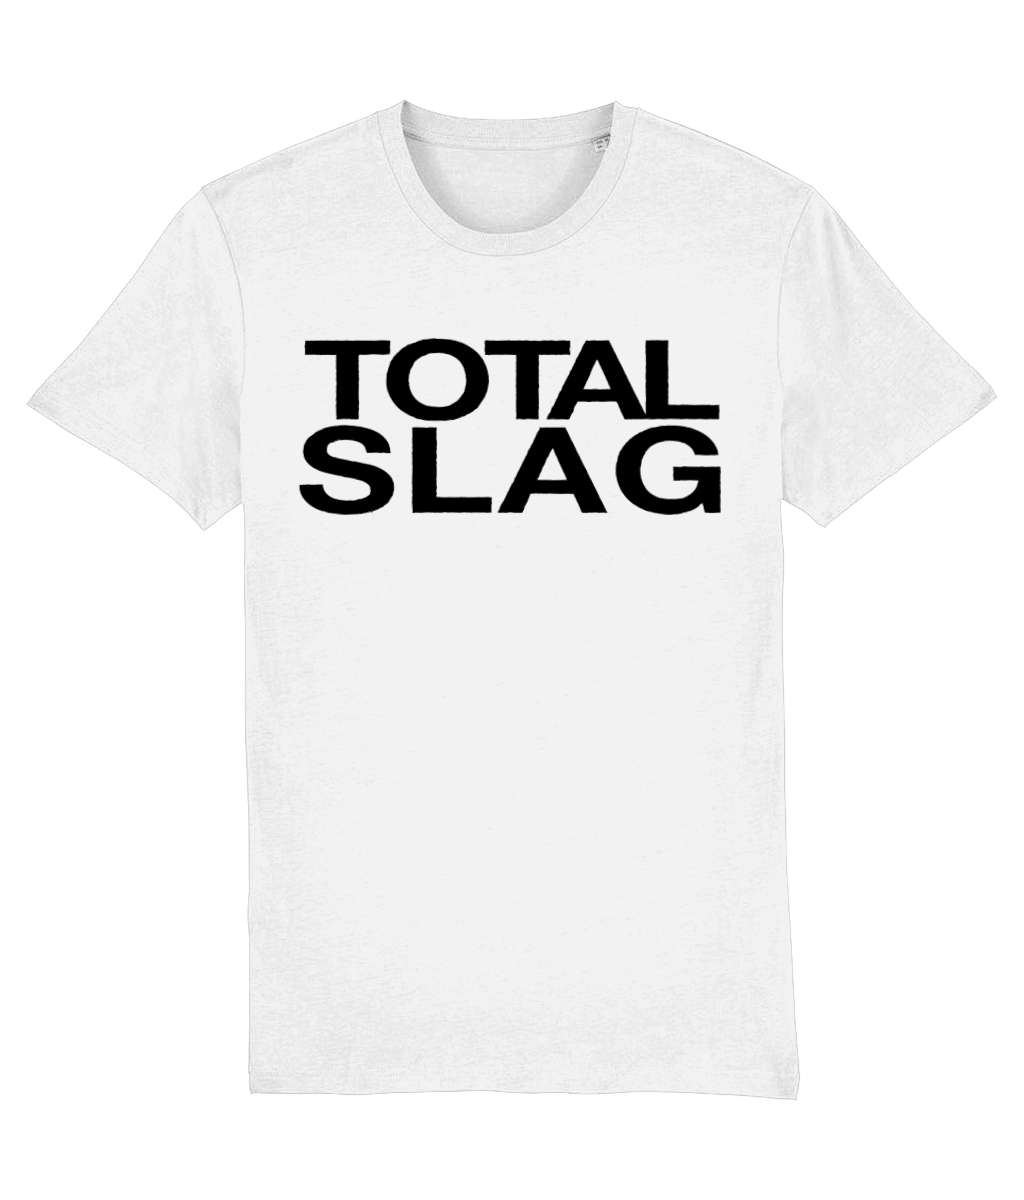 TOTAL SLAG - Vinegar Strokes Official Merch - Slogan Tee